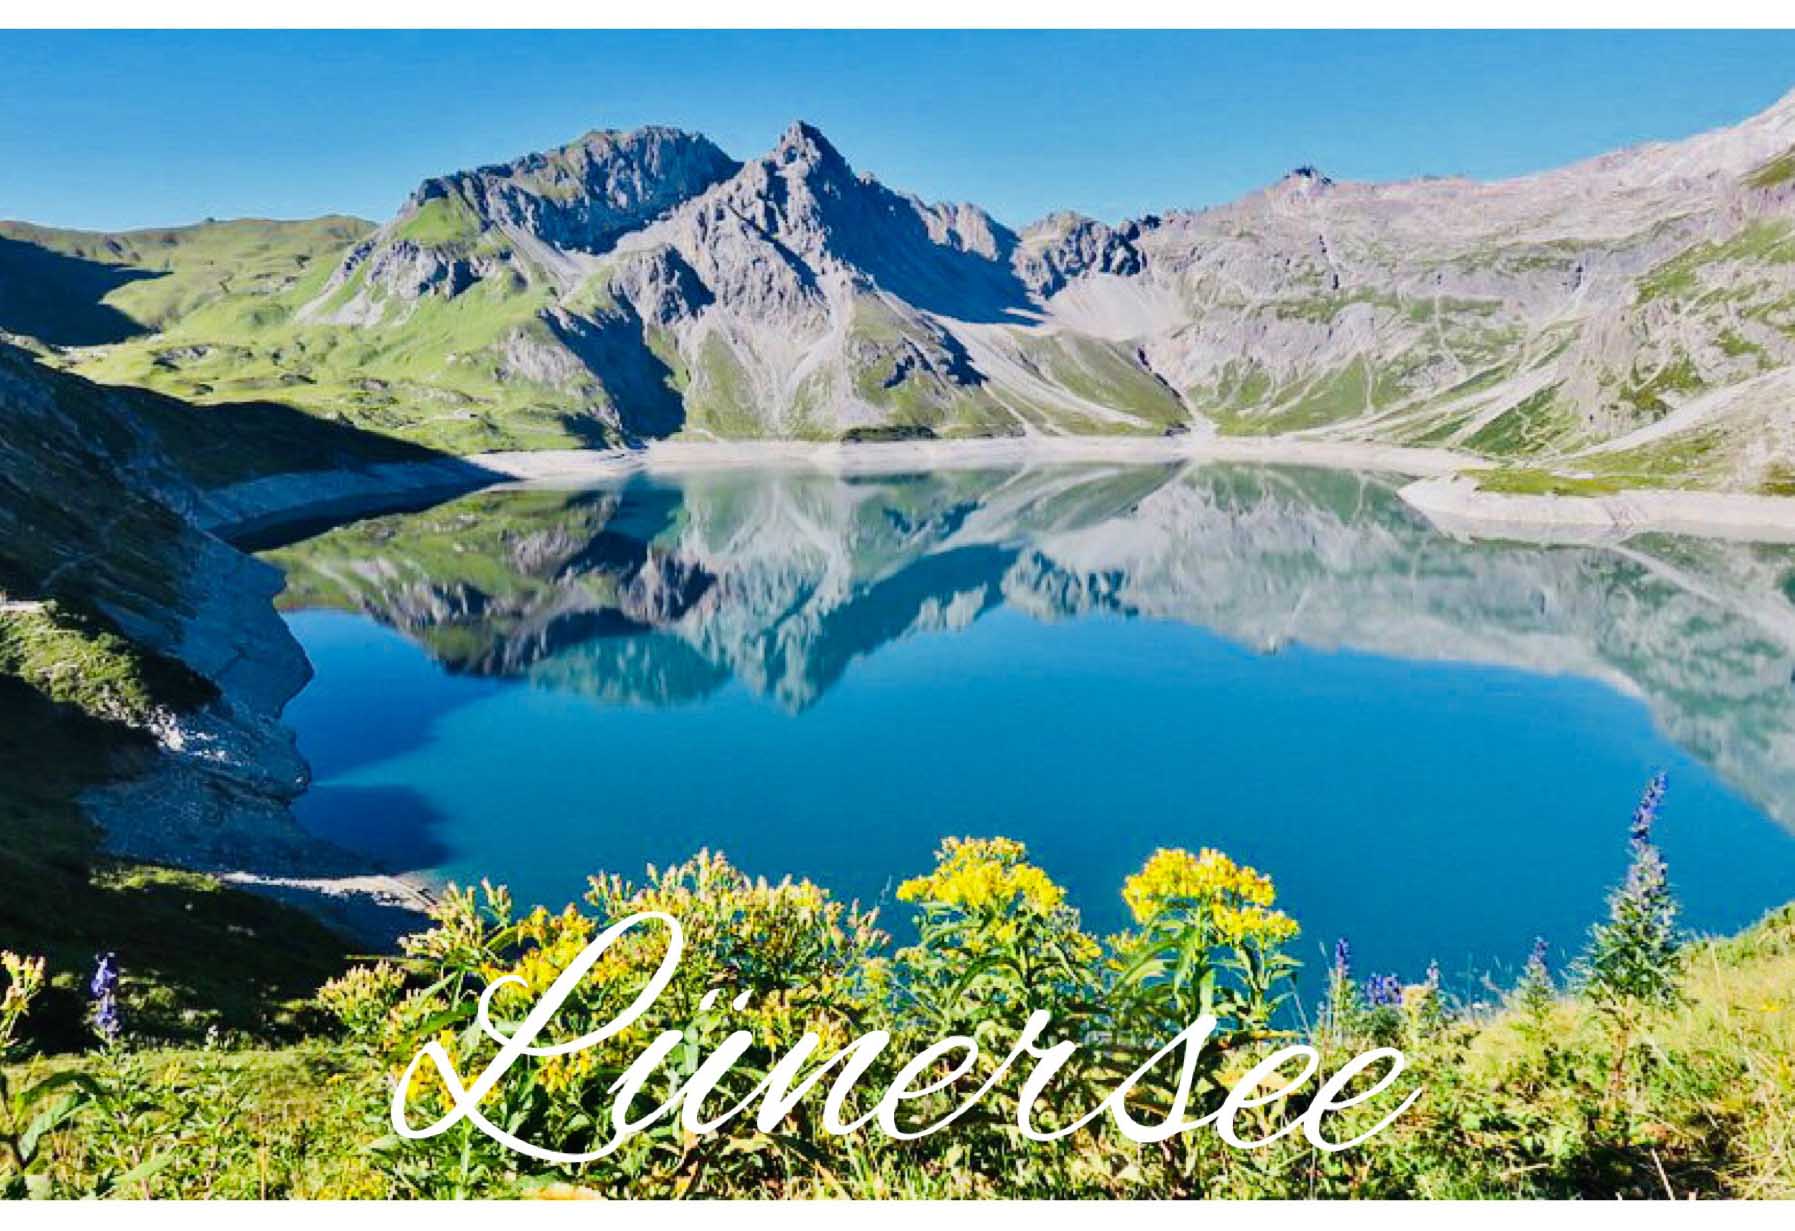 Der Lünersee ist einer der größten Seen im österreichischen Bundesland Vorarlberg.
Wasserspiegel bei Vollstau: 1970 m ü. A.
Vorarlberg, Österreich